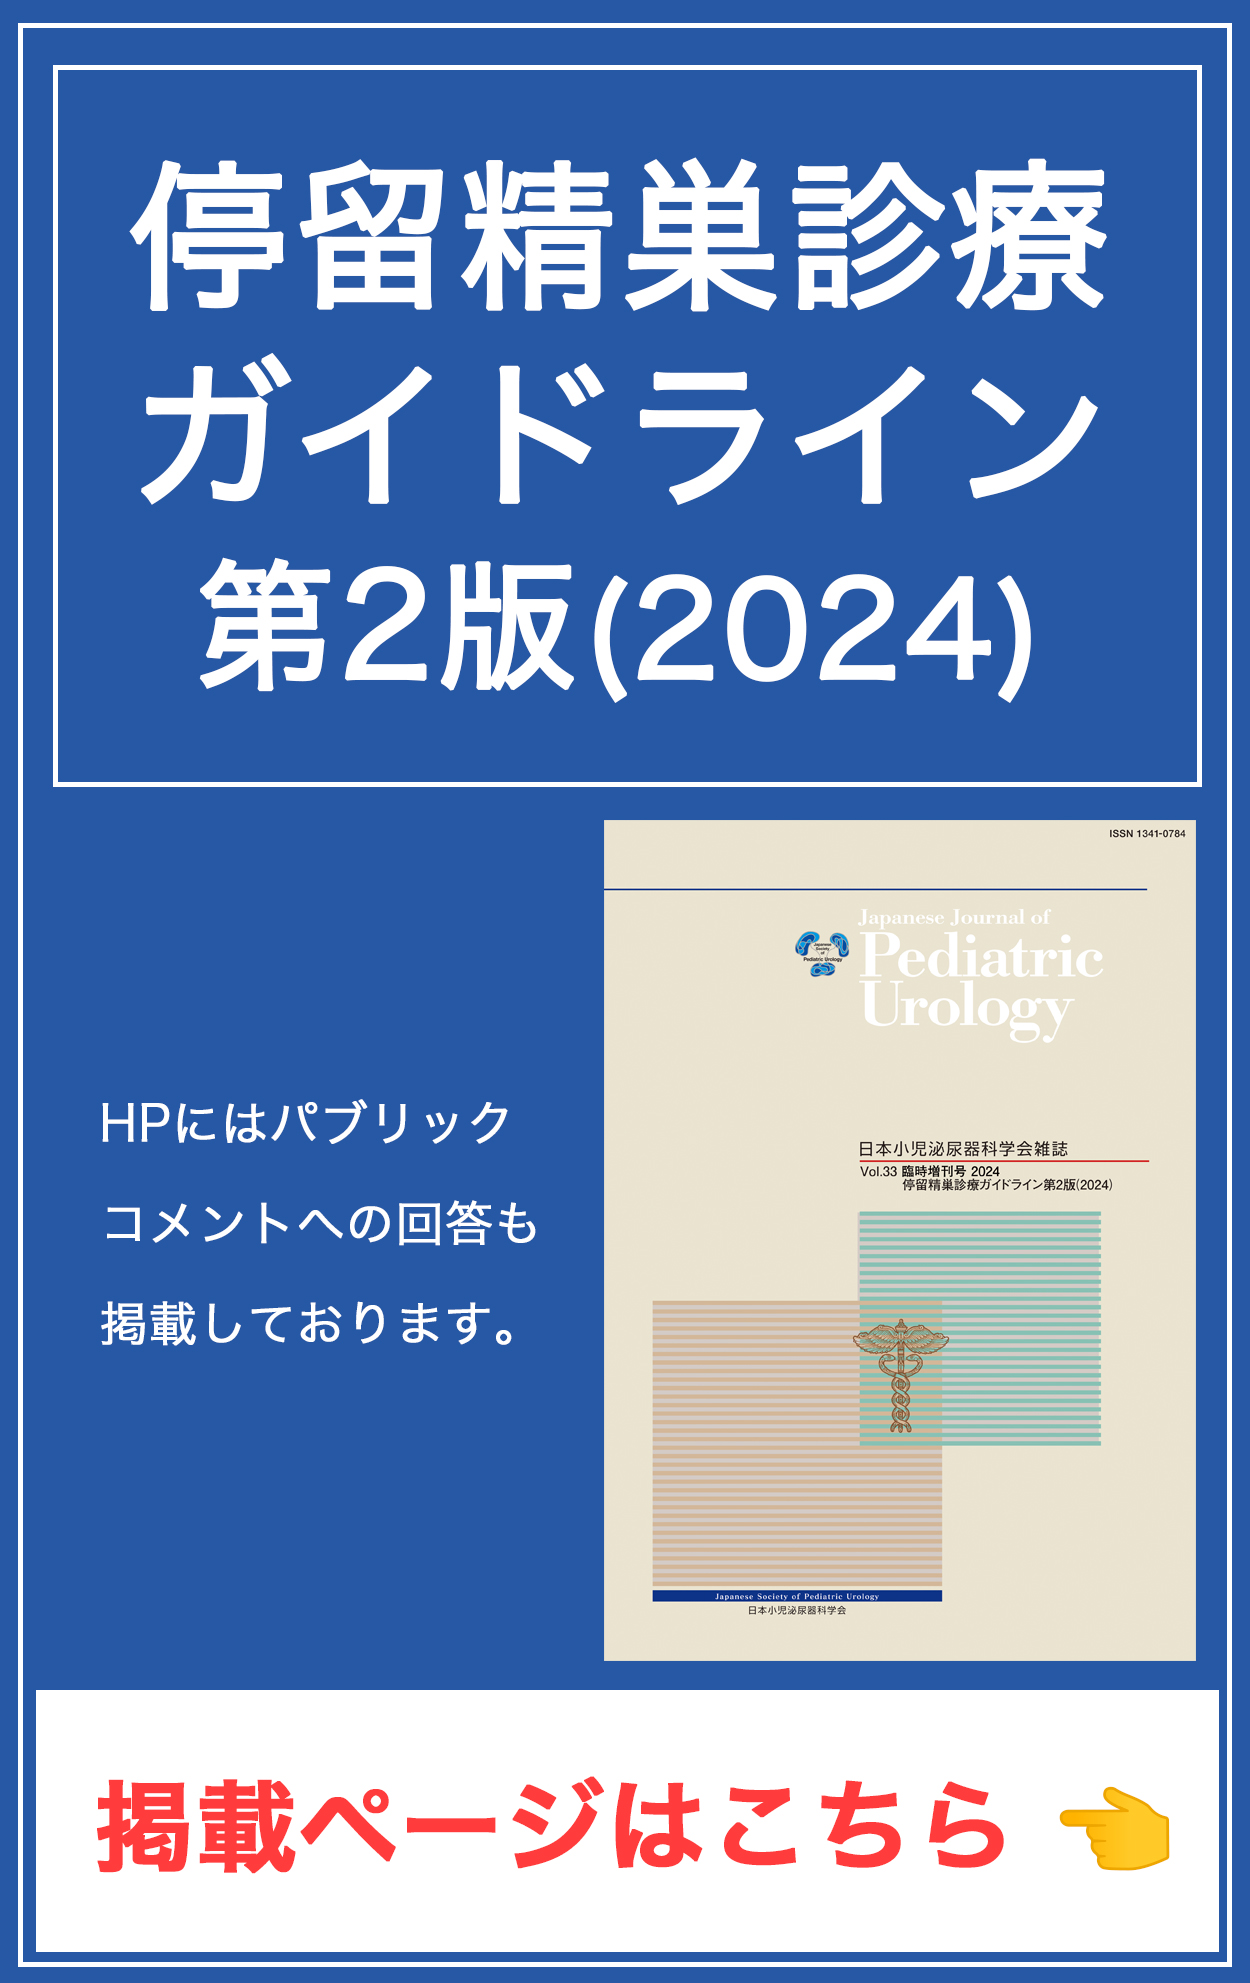 停留精巣診療ガイドライン第2版 (2024)